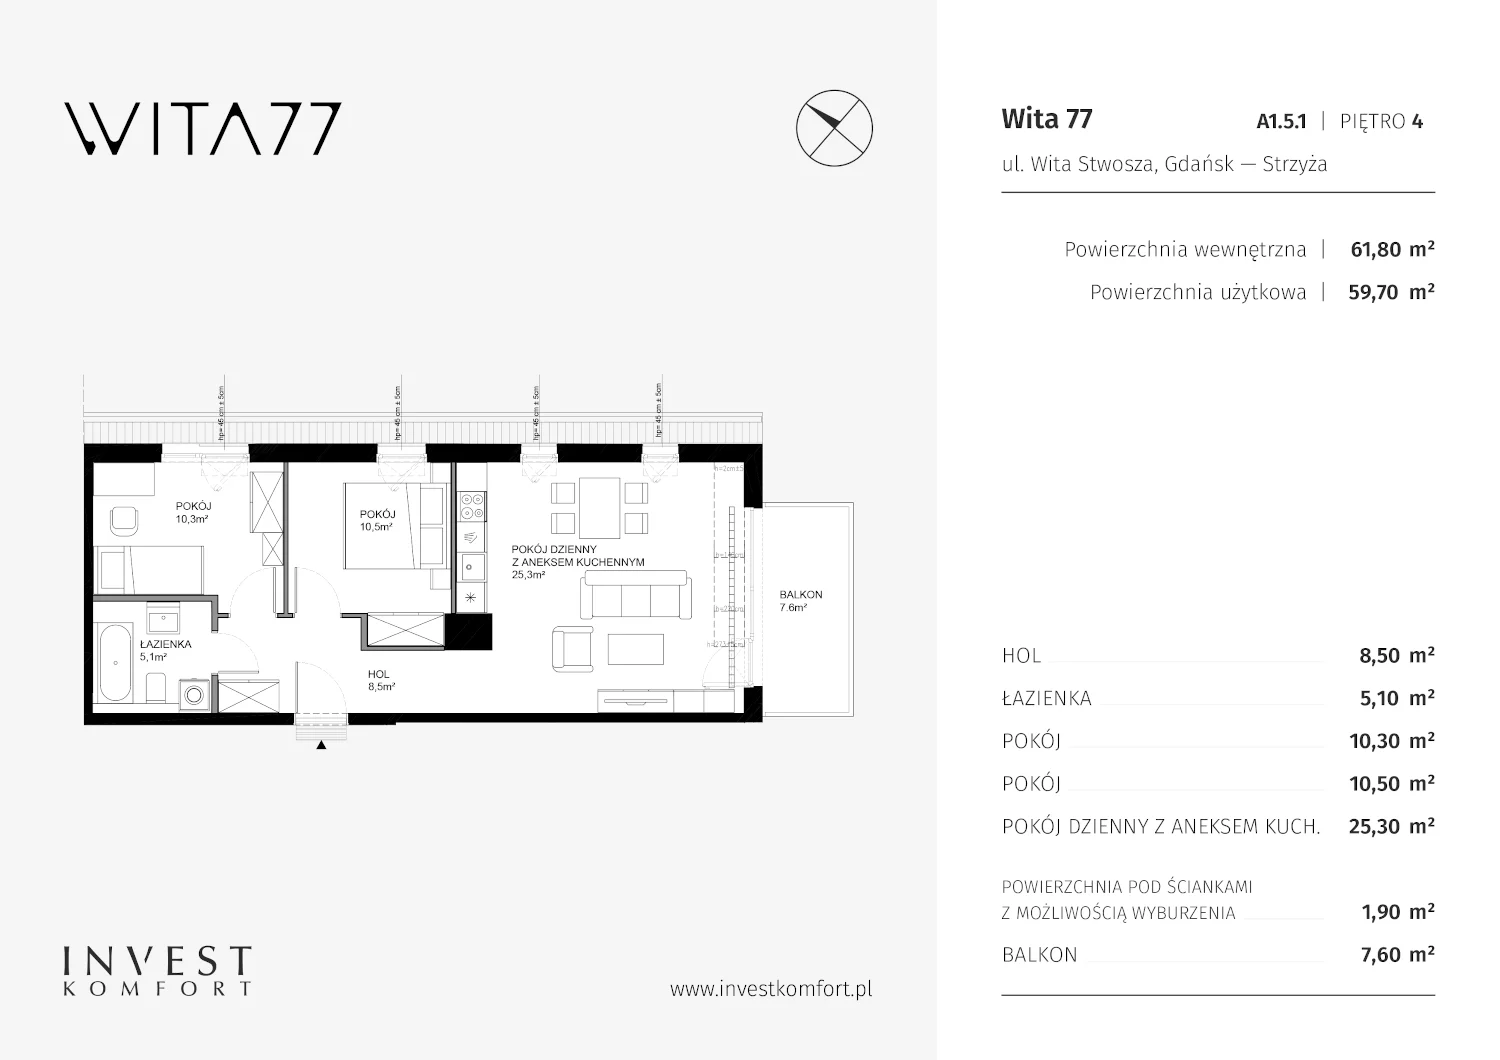 Apartament 61,80 m², piętro 4, oferta nr A1.5.1, Wita 77, Gdańsk, Strzyża, ul. Wita Stwosza 77